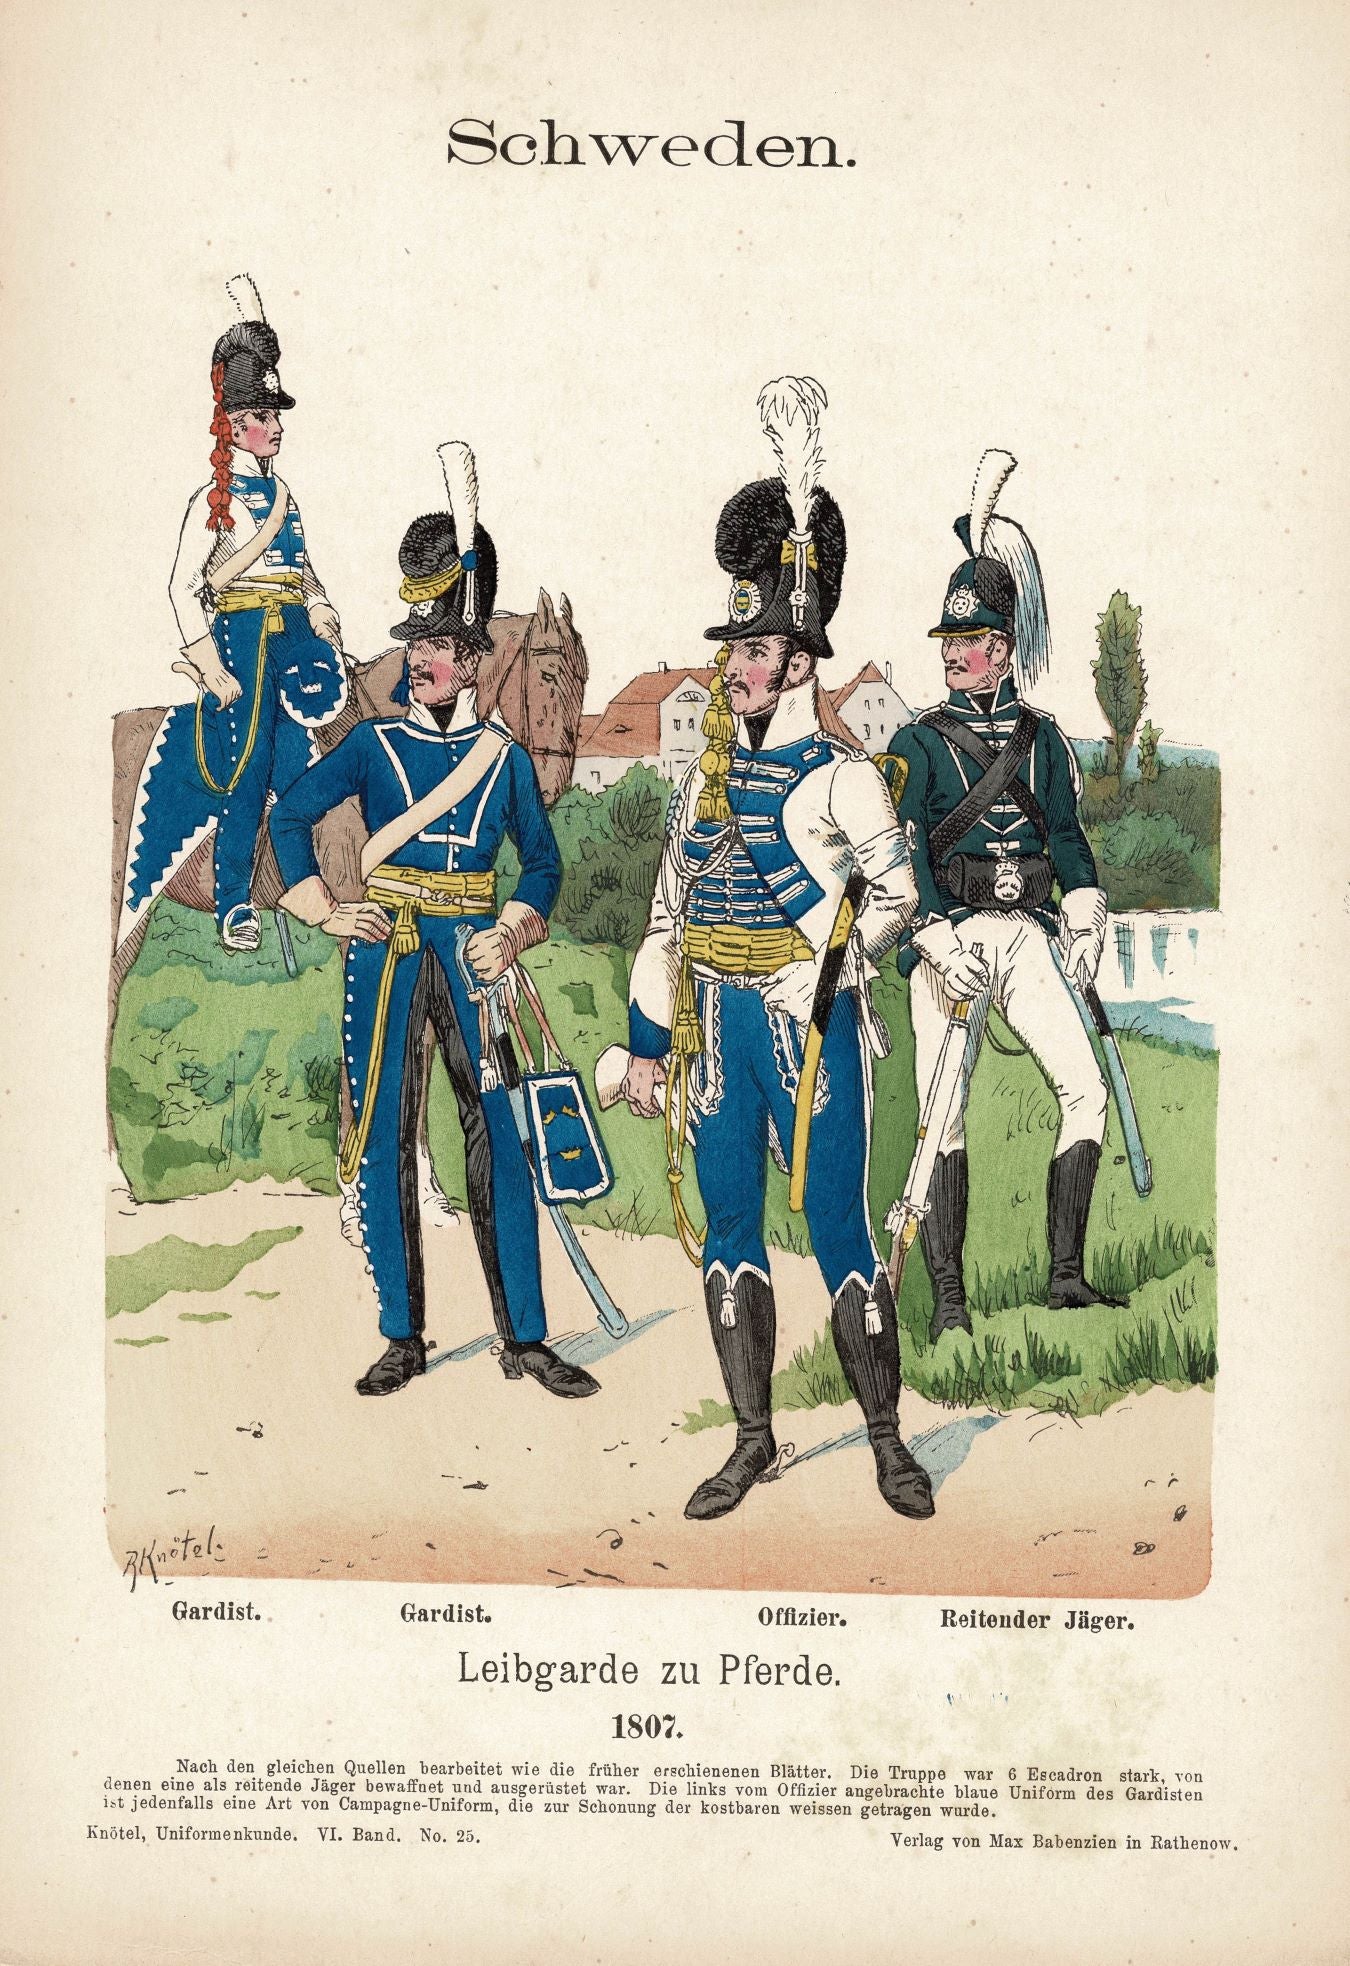 Swedish Mounted Lifeguards Uniforms from 1807 Richard Knötel, 1895